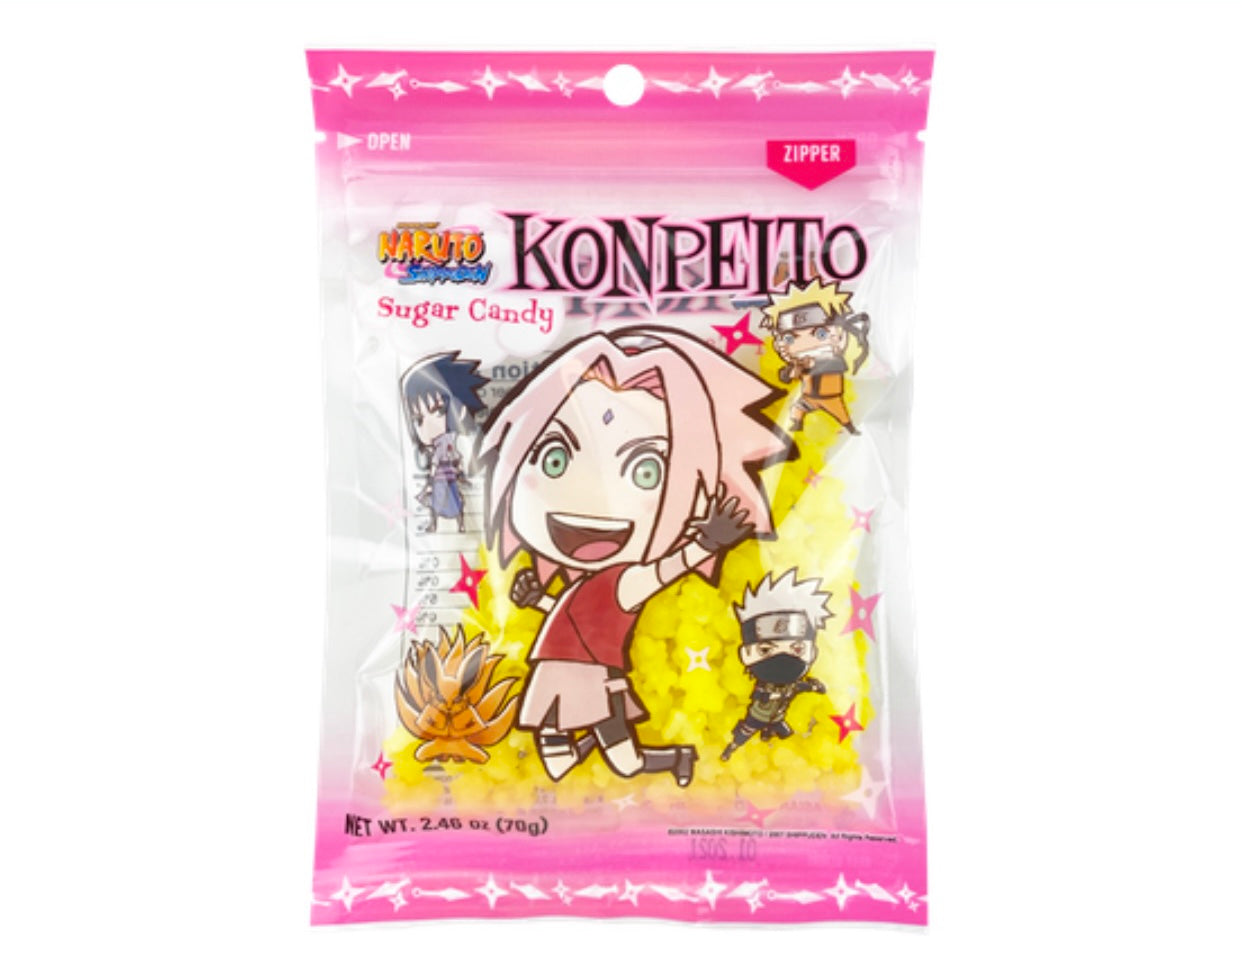 Naruto Shippuden Konpeito Sugar Candy - Otaku Haven LLC